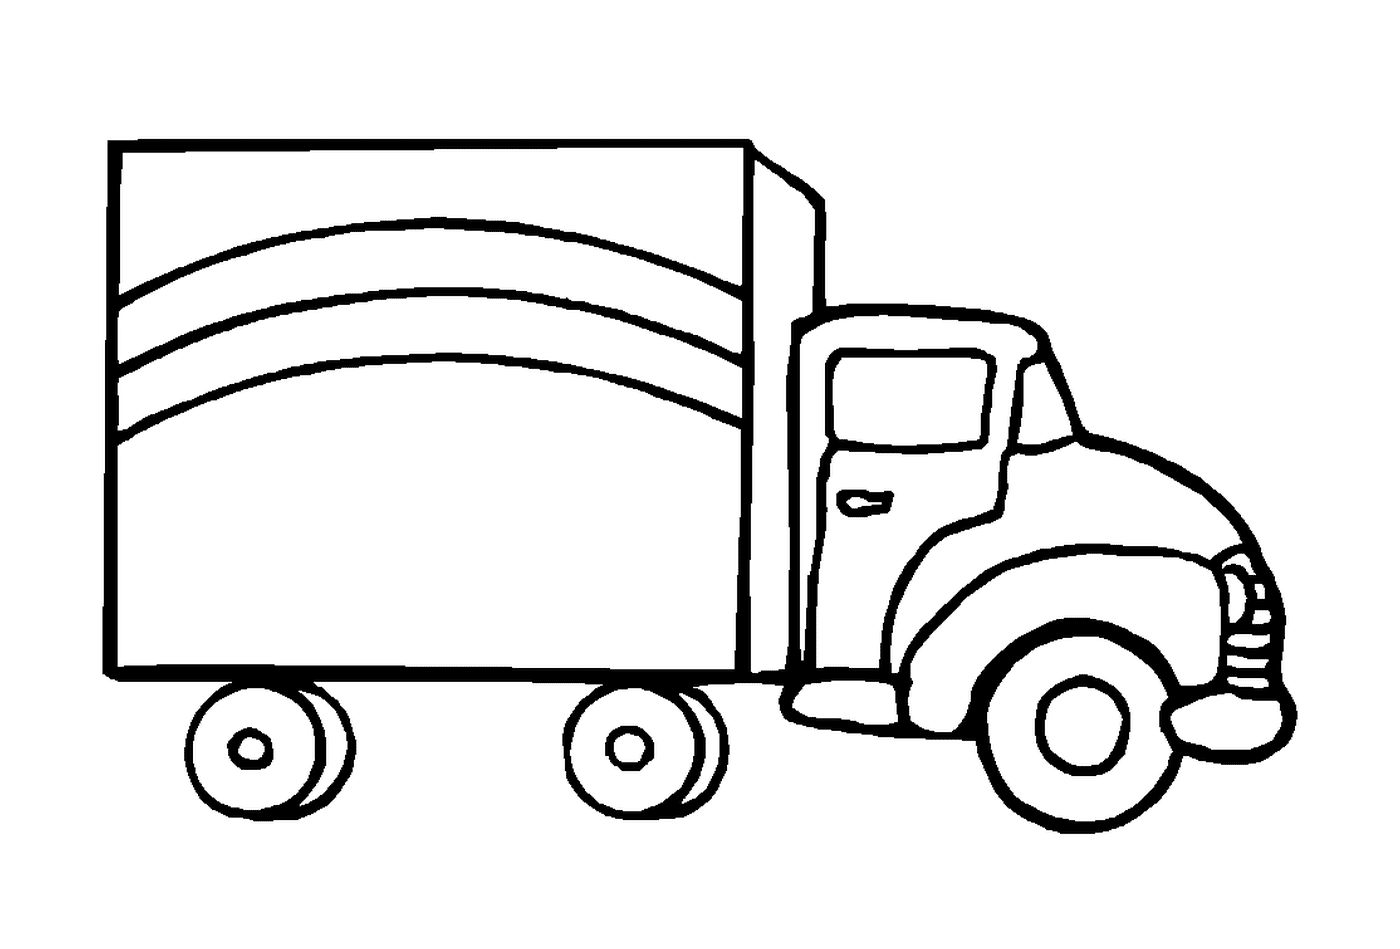  Un camion tirato 